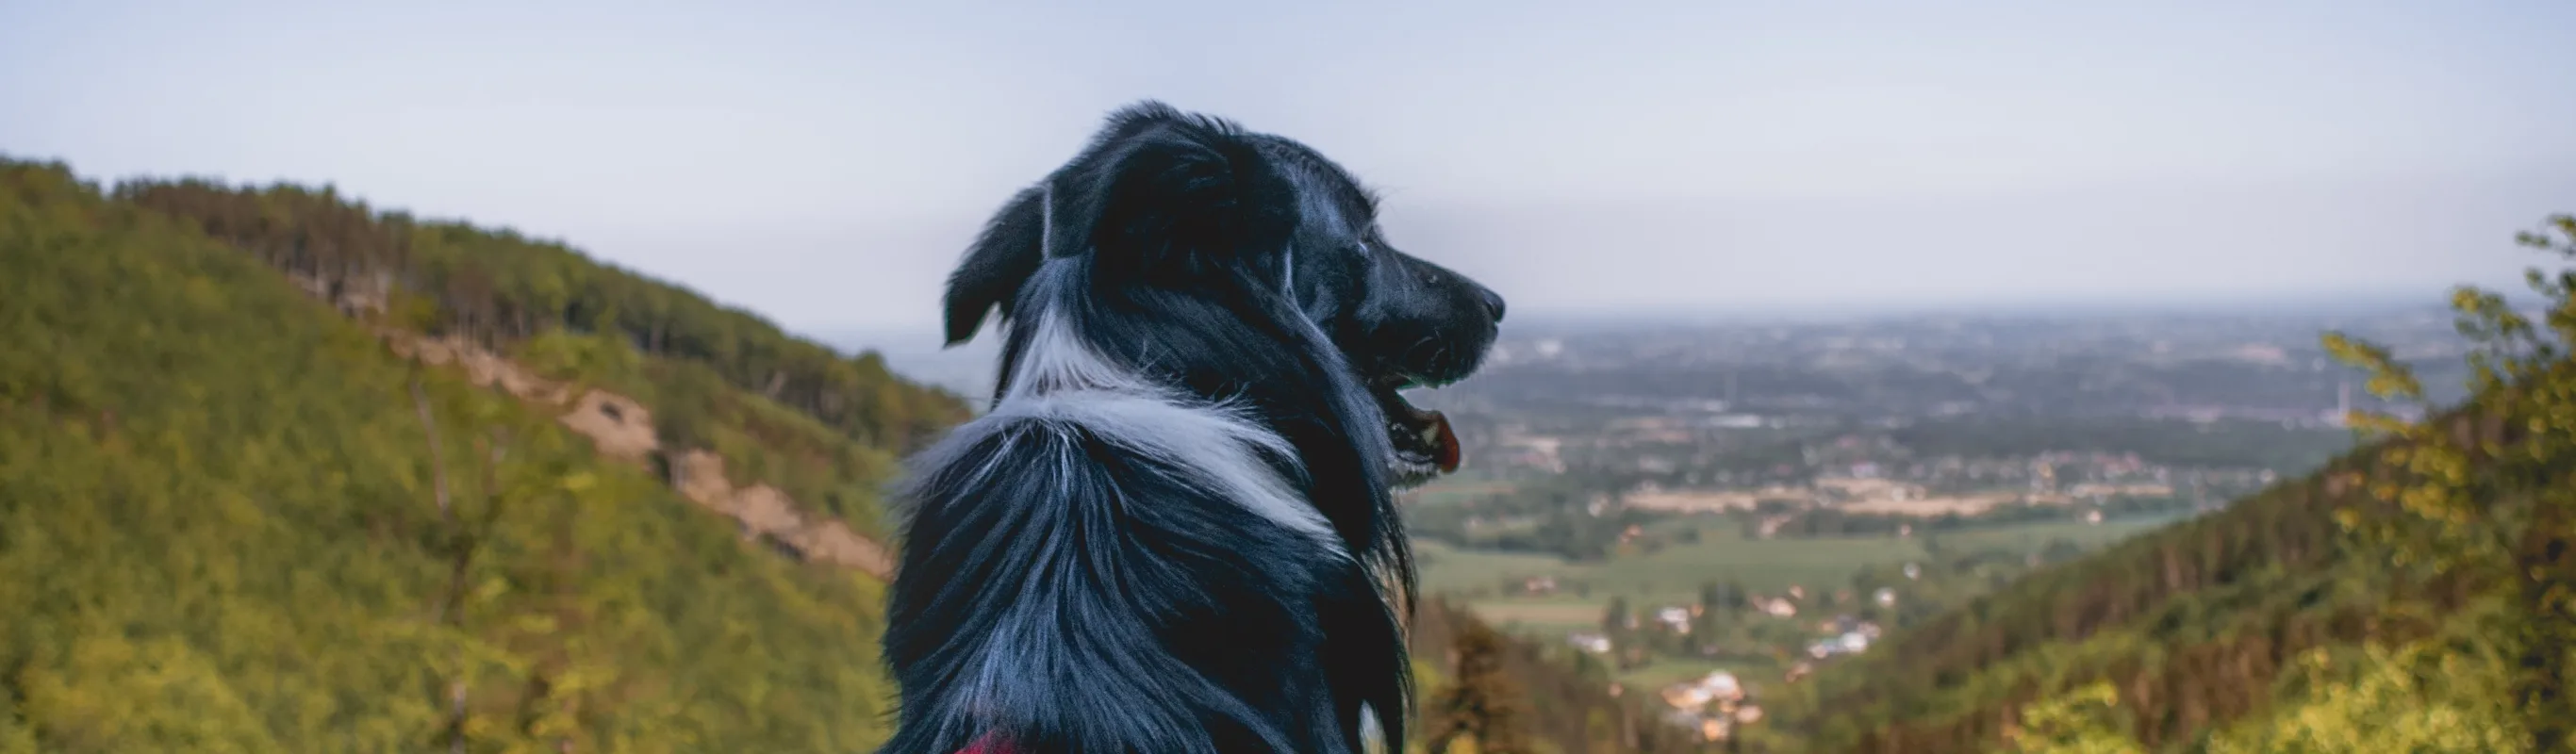 Dog sitting on mountain overlooking horizon